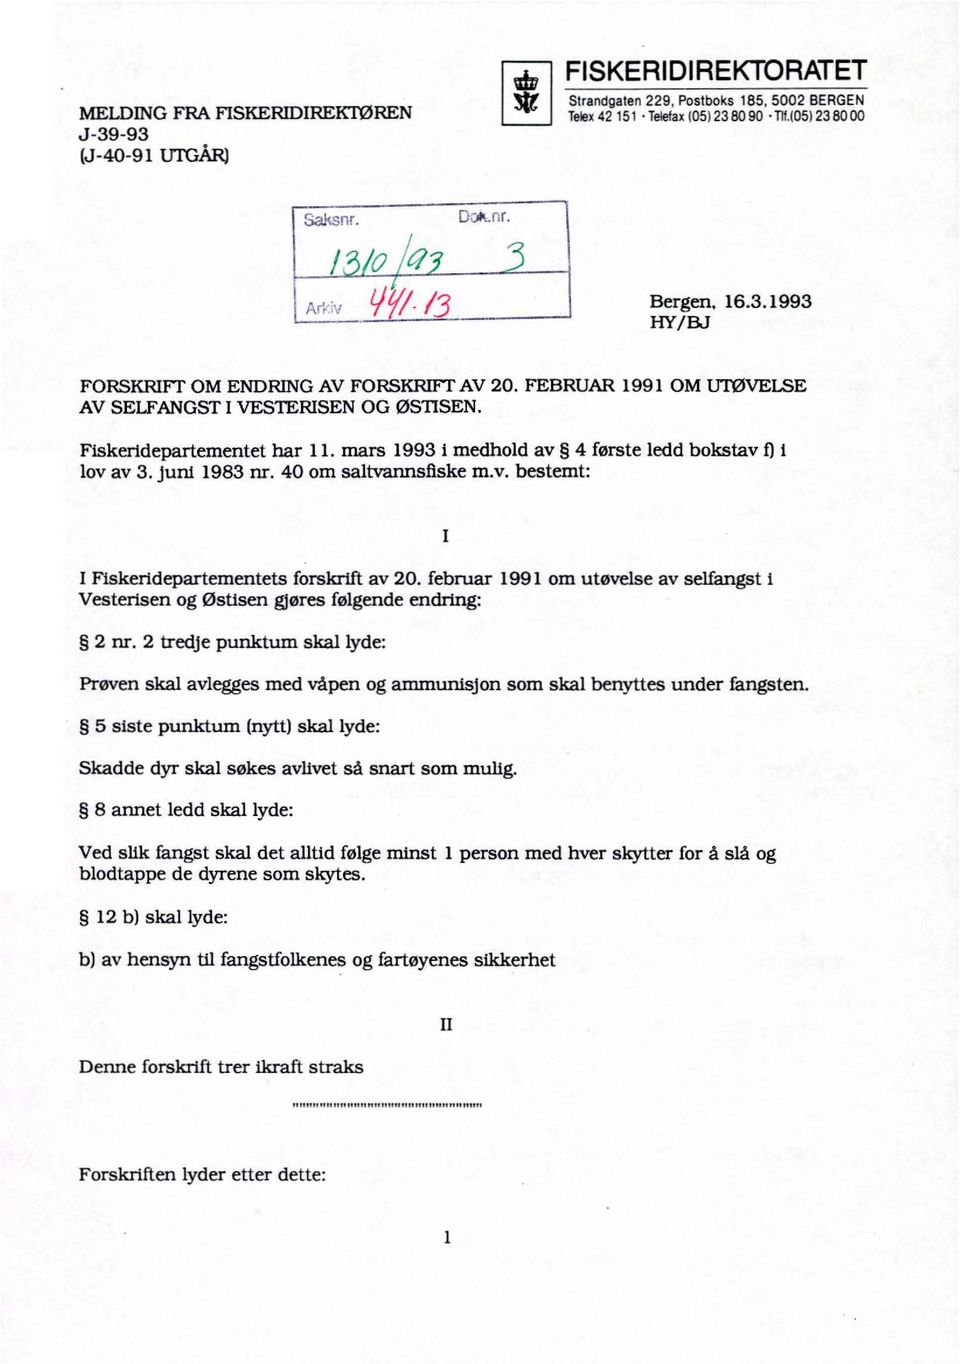 februar 1991 om utøvelse av selfangst i Vesterisen og Østisen gjøres følgende endring: 2 nr.